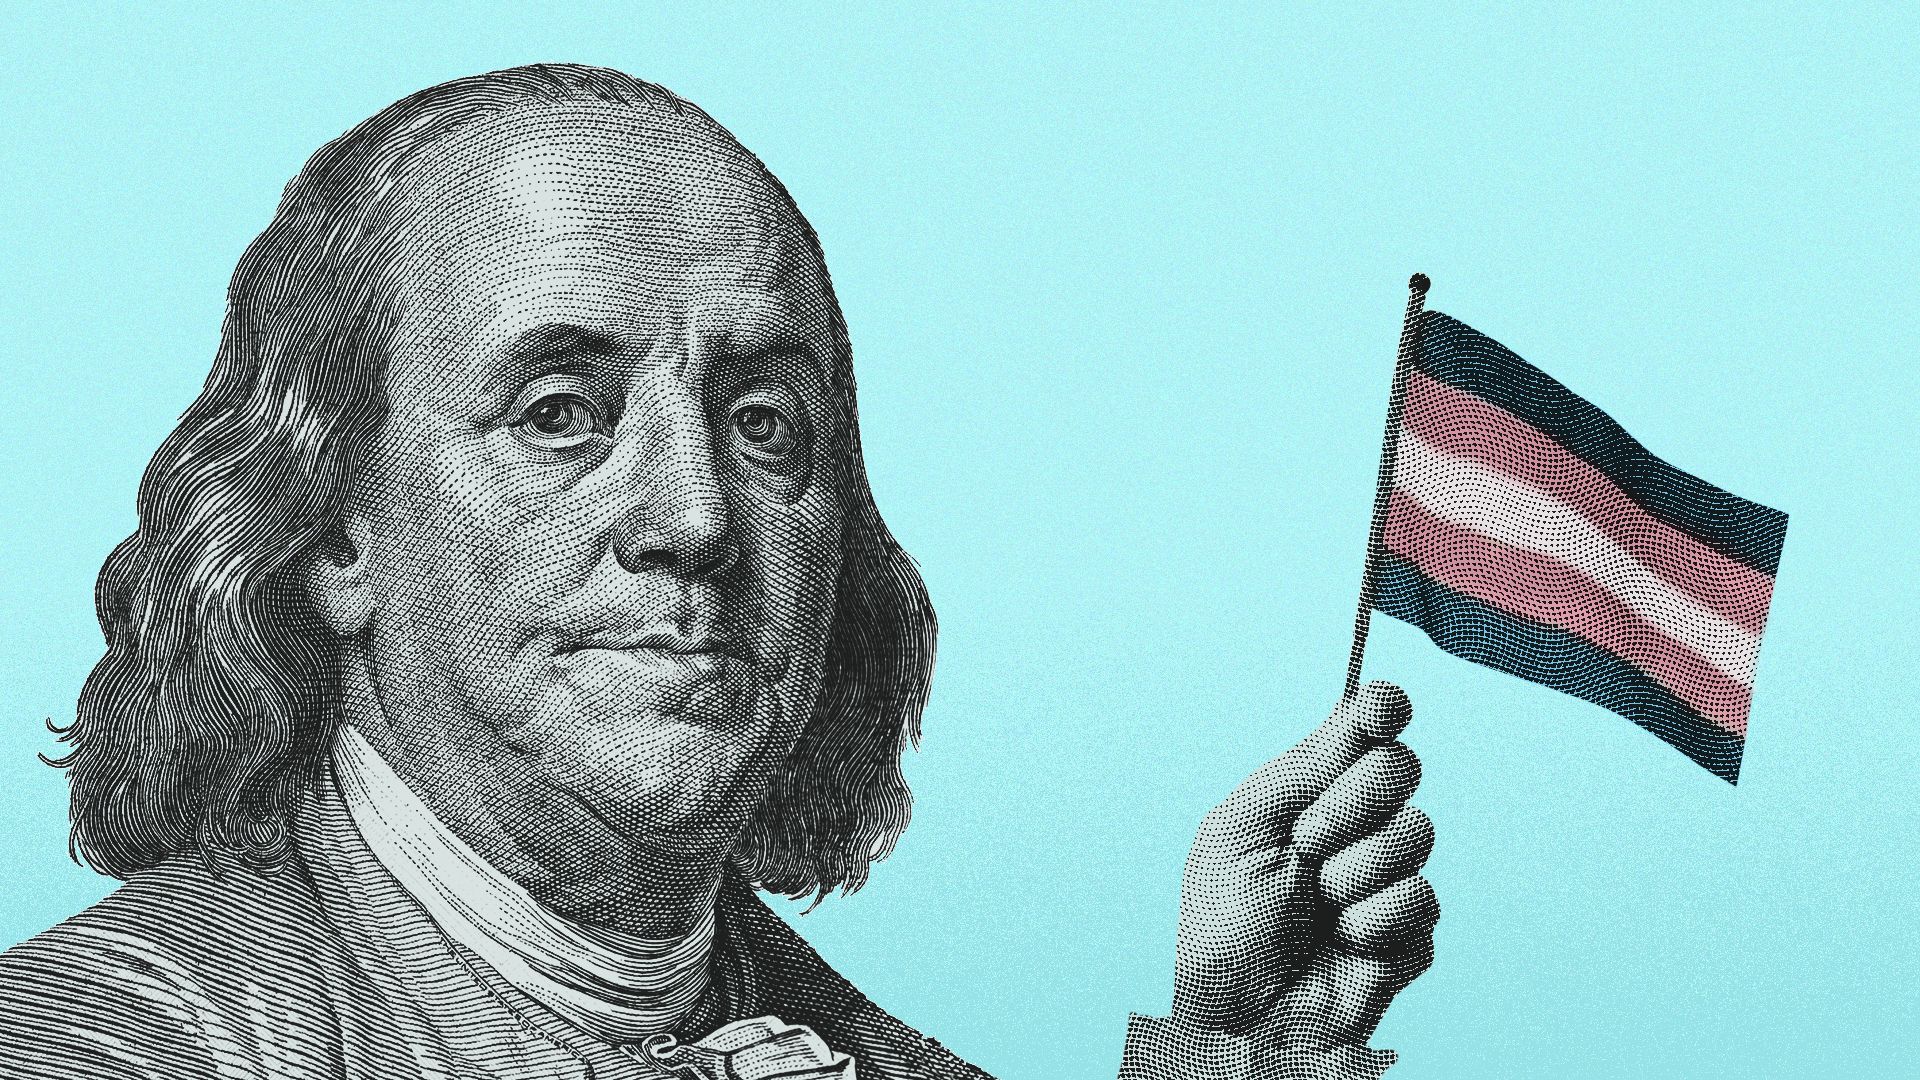 Illustration of Benjamin Franklin waving a trans flag.